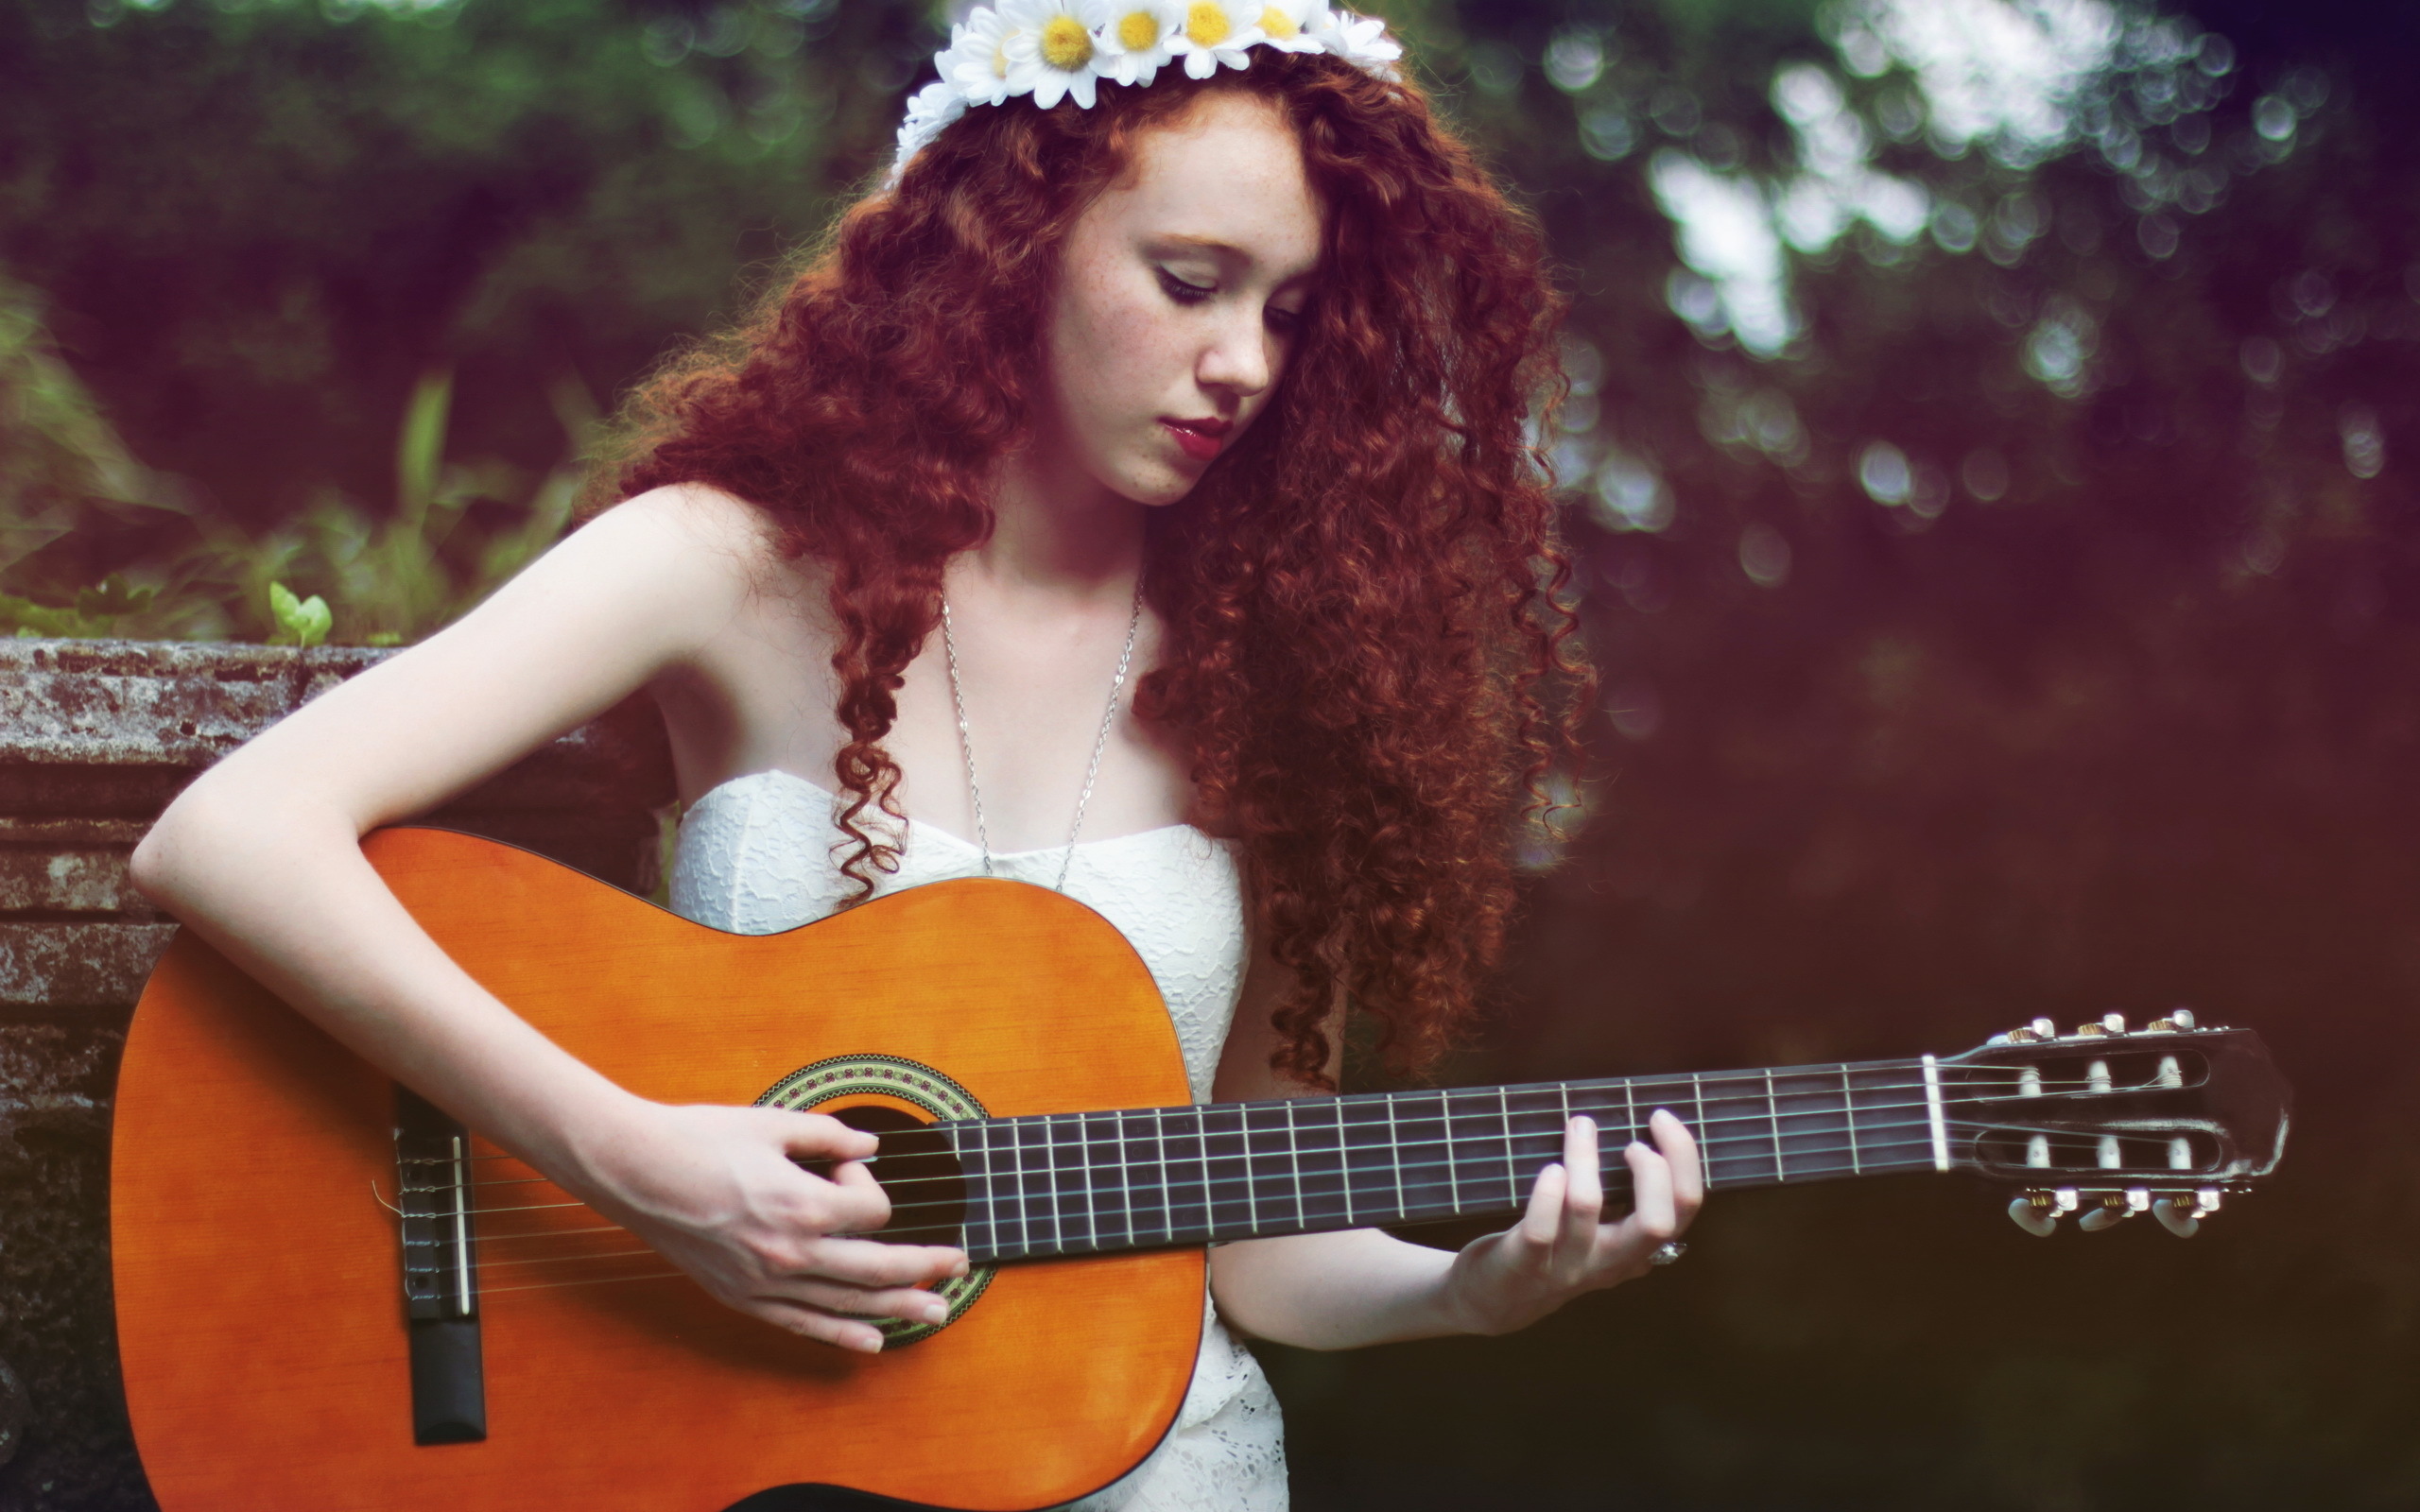 Слушать музыку гитары для души. Фотосессия с гитарой. Фотосессия с гитарой девушка. Рыжая девушка с гитарой. Портрет с гитарой.